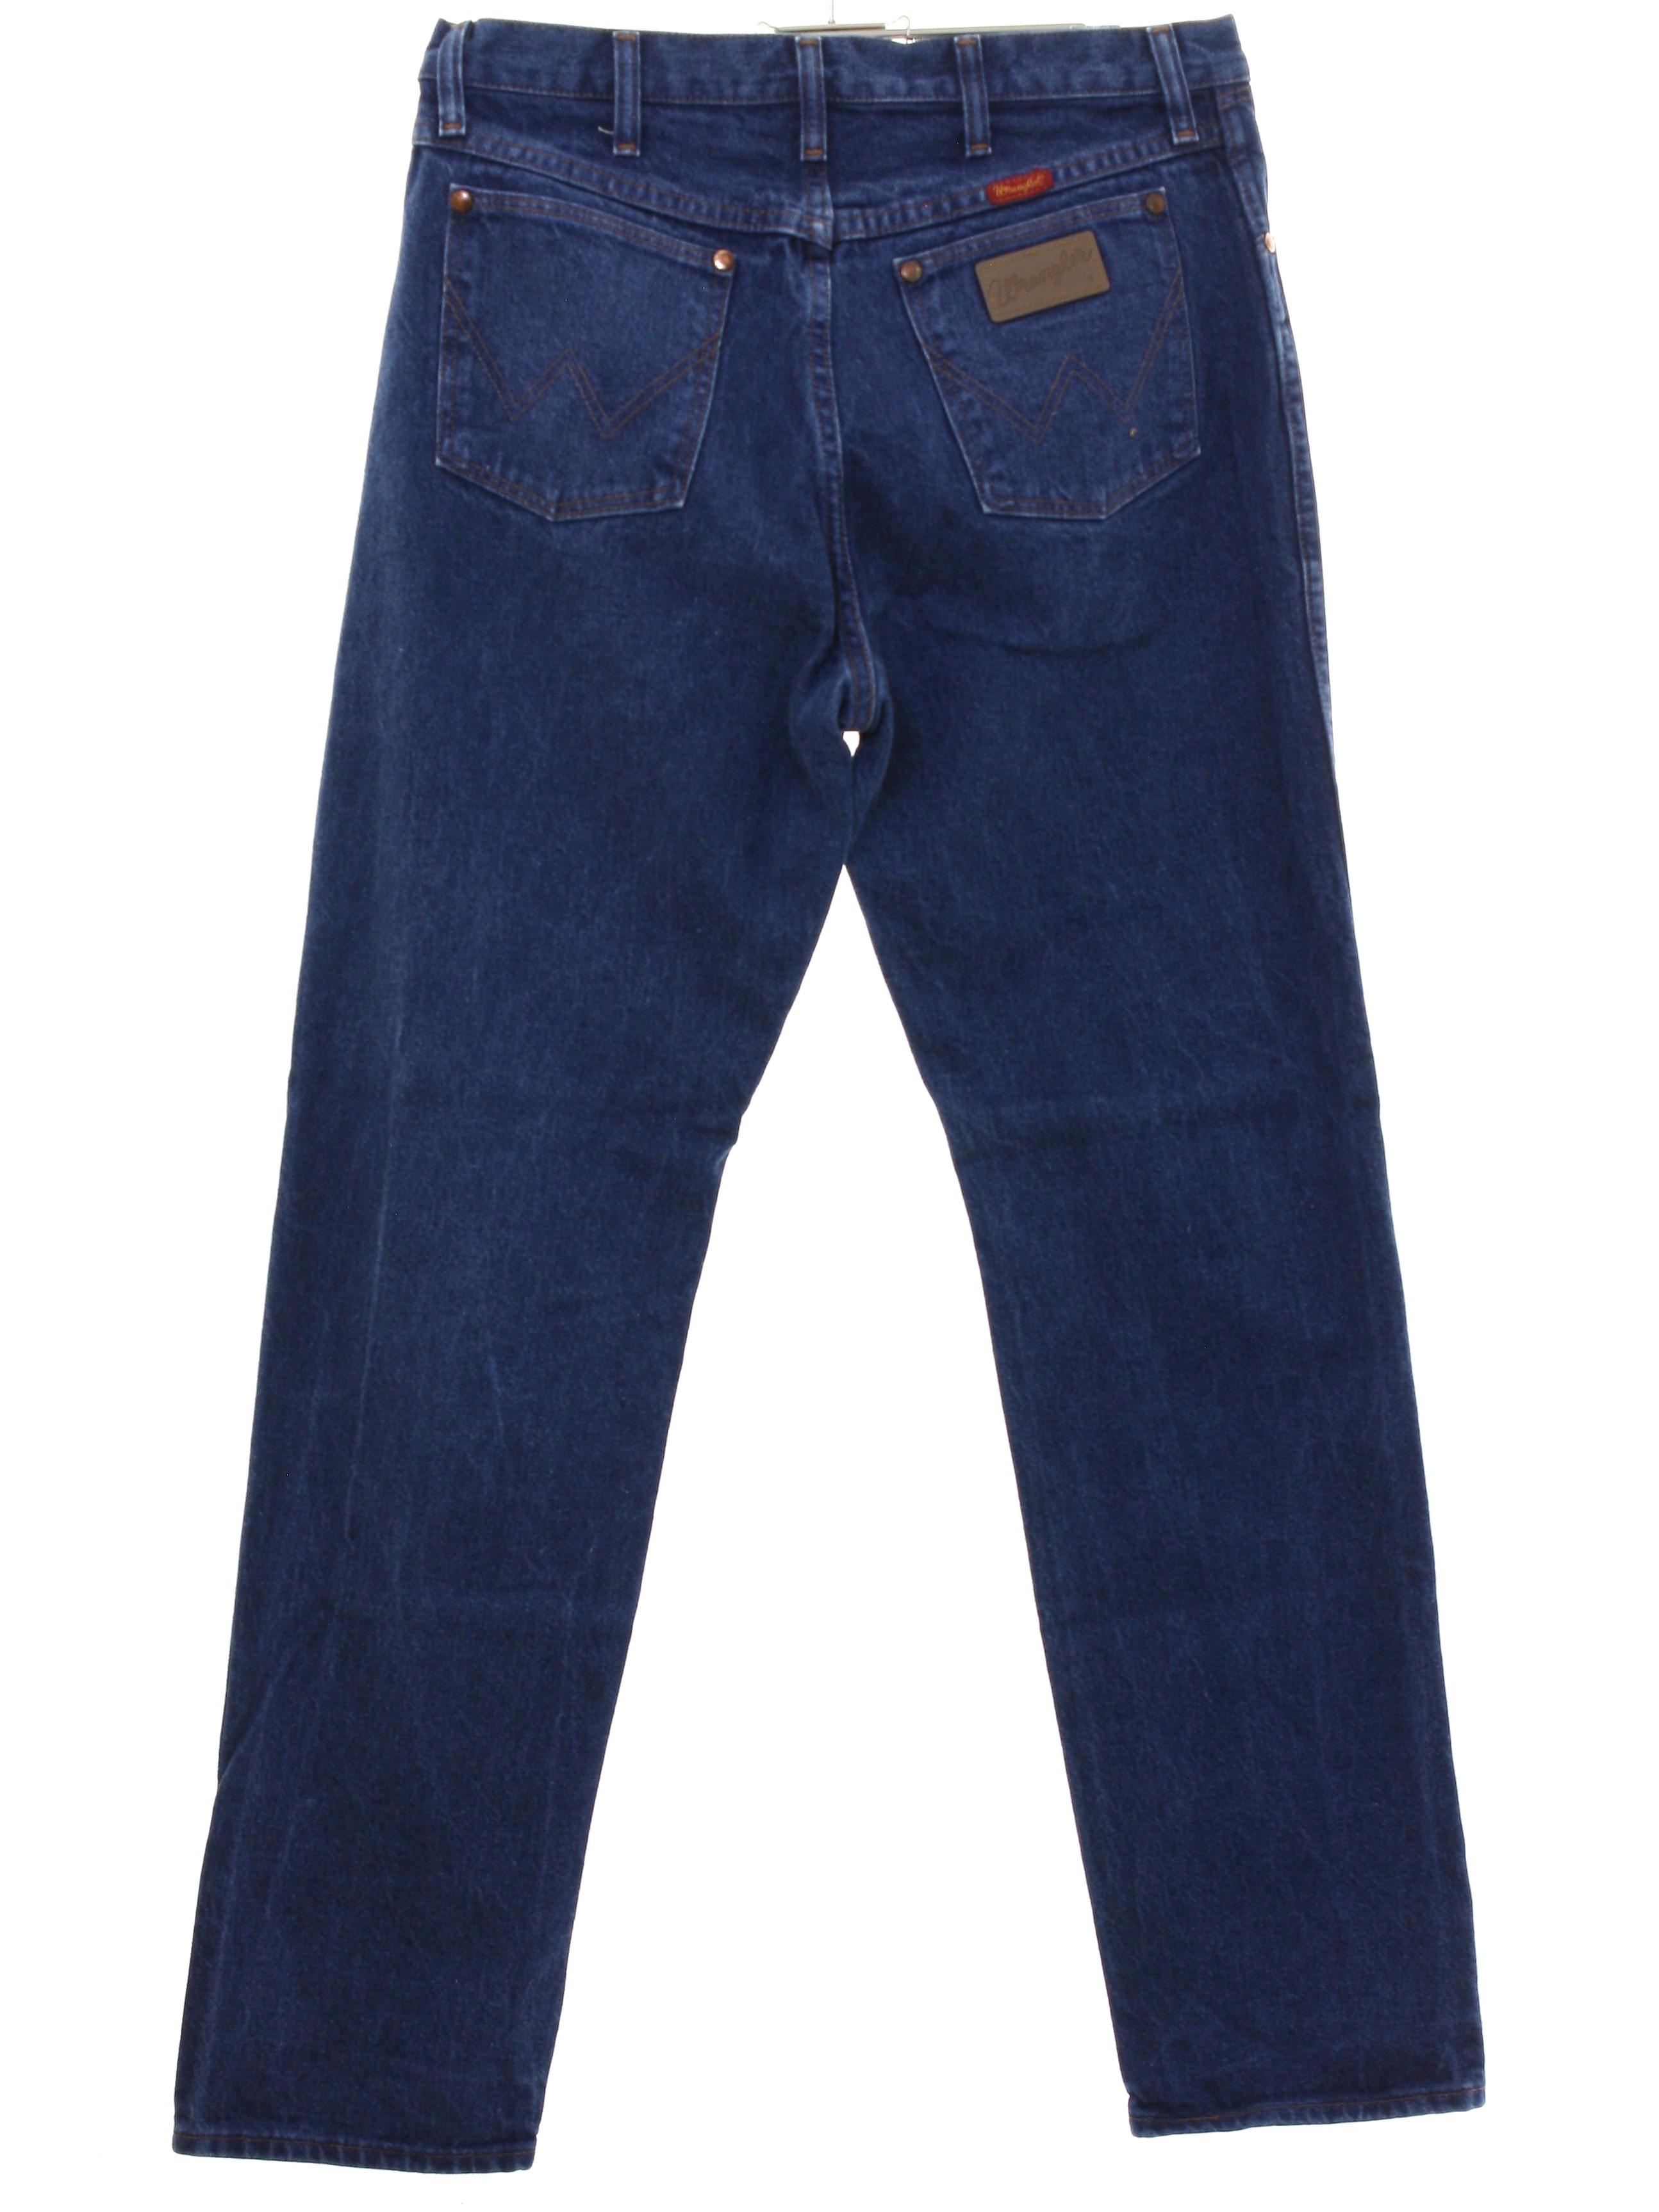 vintage wrangler jeans mens